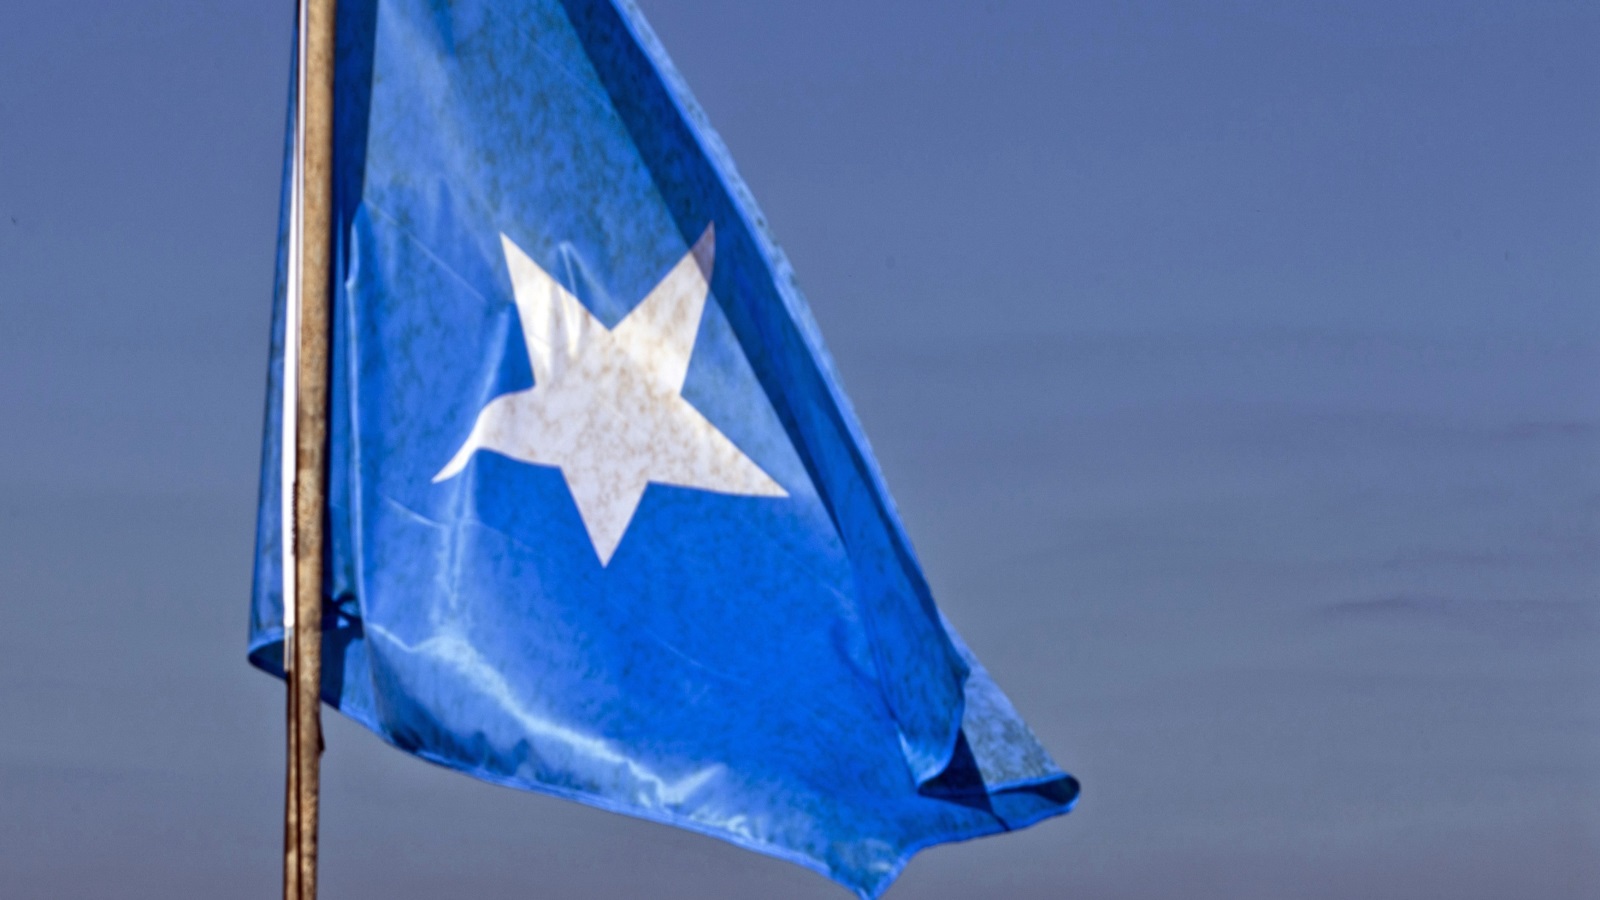 التجربة الإسلامية السياسية الصومالية معقد آمال الشعب الصومالي المسلم، وهي تمر بمرحلة انتقالية، ويُفترضُ أن تستشرف مستقبلا واعدا يتجاوز الحدود الحزبية الضيقة